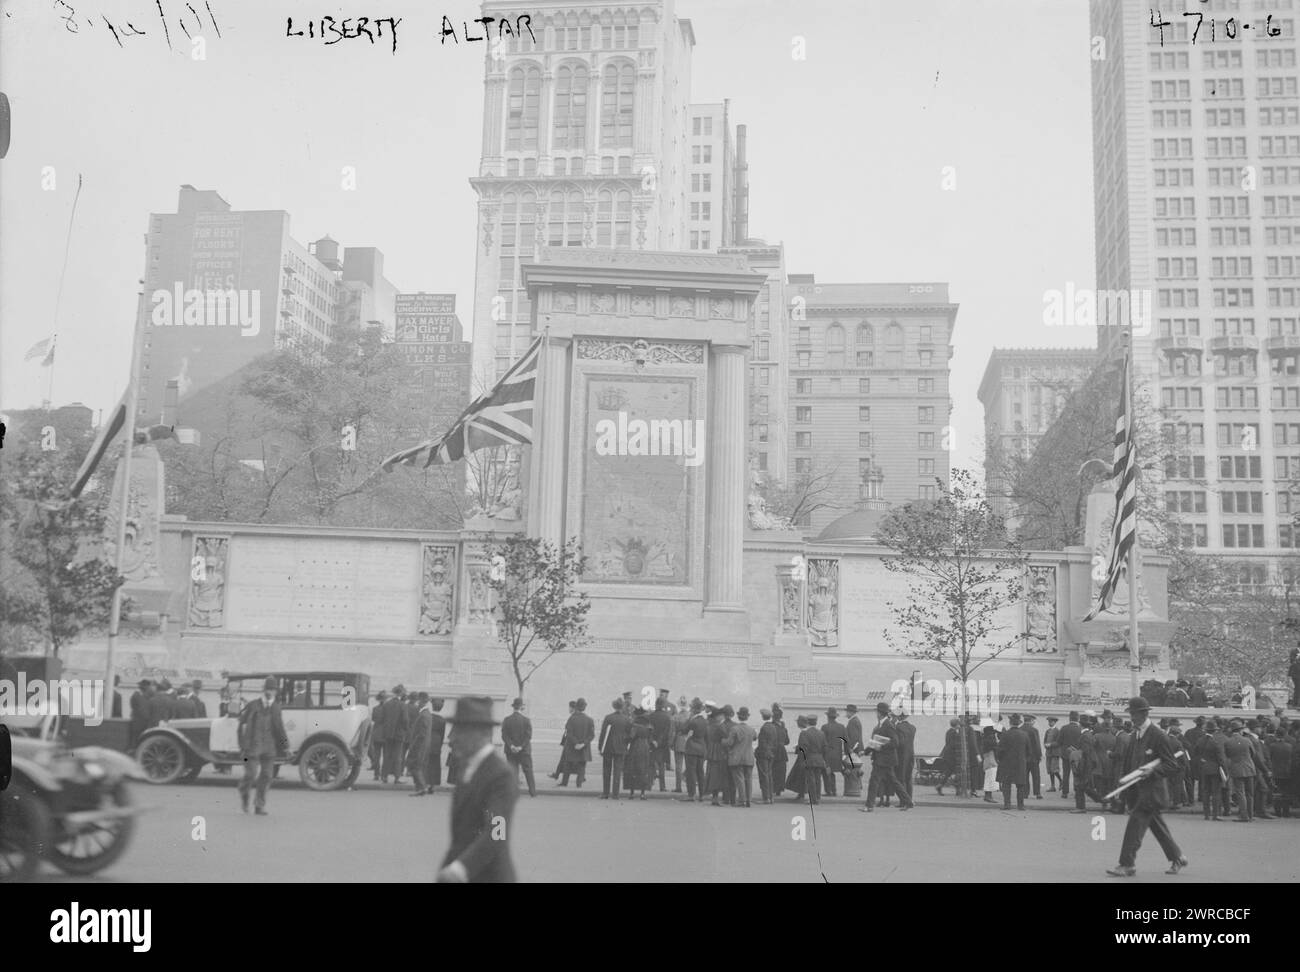 Liberty altar, la fotografia mostra l'altare della libertà al Madison Square Park, New York City, dedicato il 28 settembre 1918 come parte delle celebrazioni in onore dell'inizio della quarta campagna di prestito della libertà durante la prima guerra mondiale, 1918, guerra mondiale. 1914-1918, negativi di vetro, 1 negativo: Vetro Foto Stock